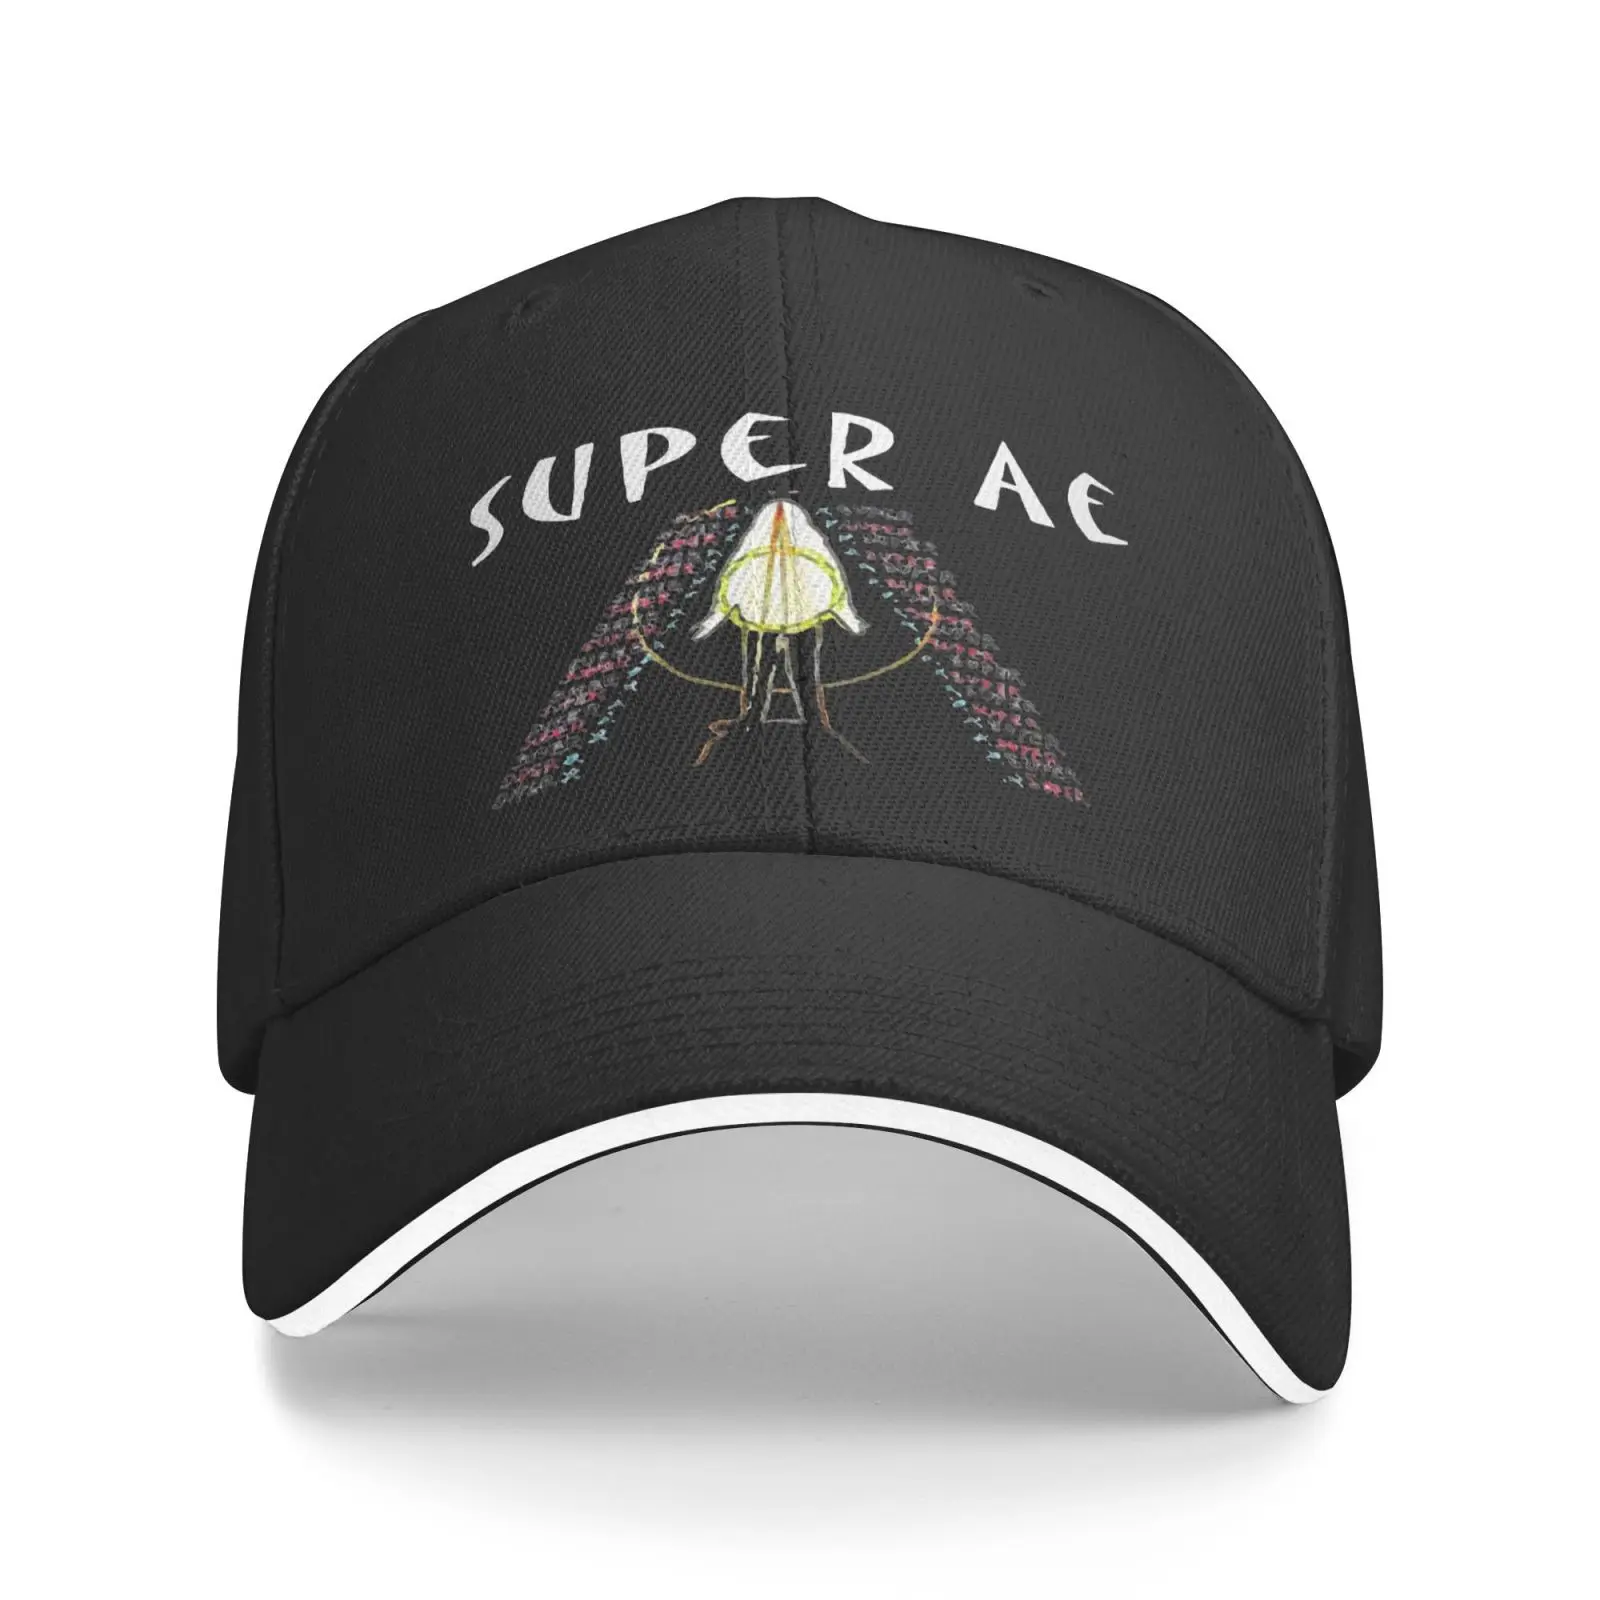 

Мужская вязаная шапка-Панама для мужчин и женщин, шапка-берет в стиле альбома Super Ae, стильная шапка для зимы, 2021